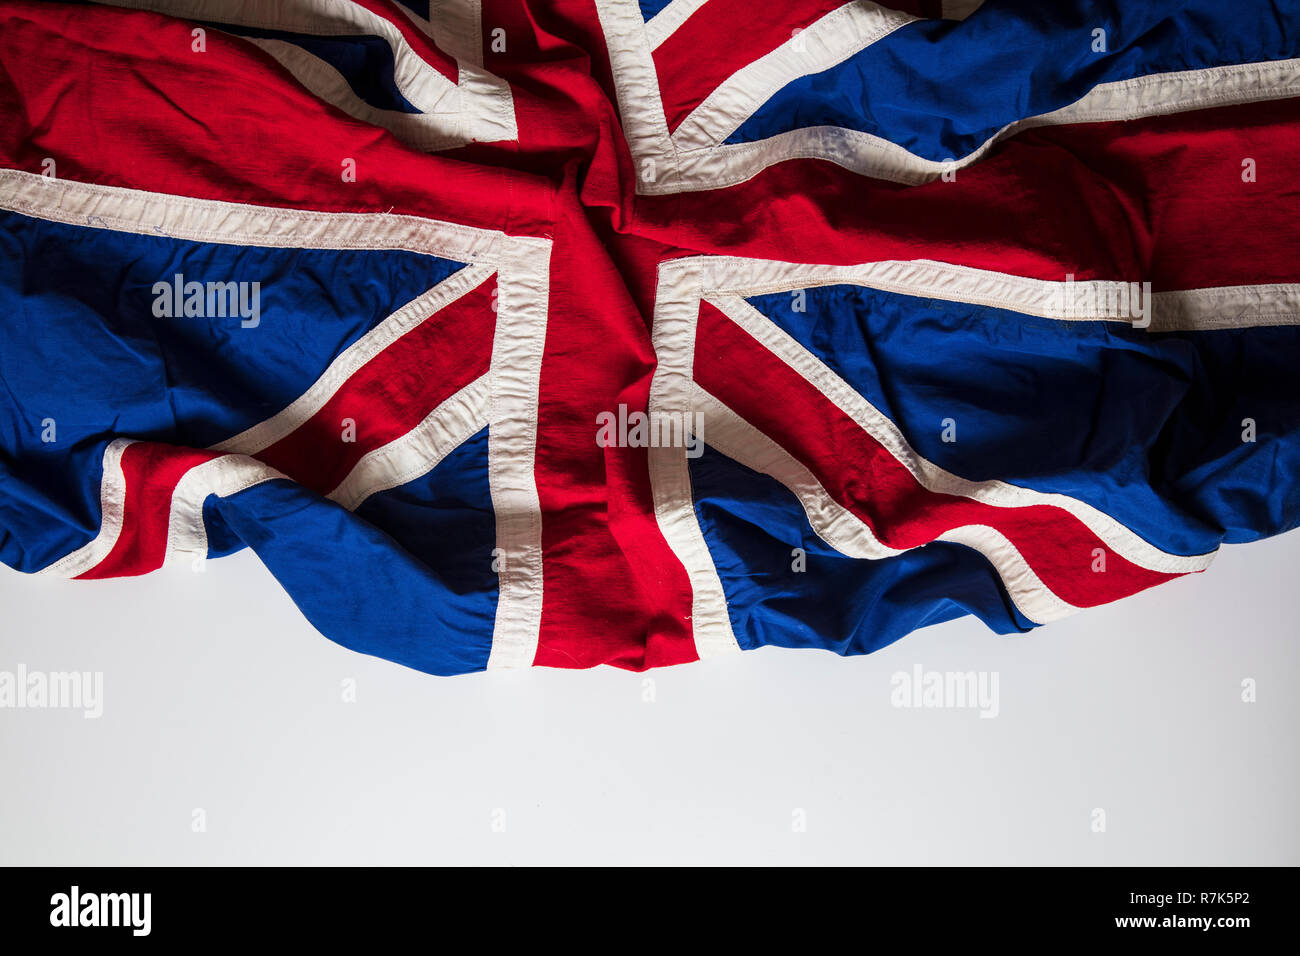 Vintage Union Jack flag, United Kingdom flag background Stock Photo